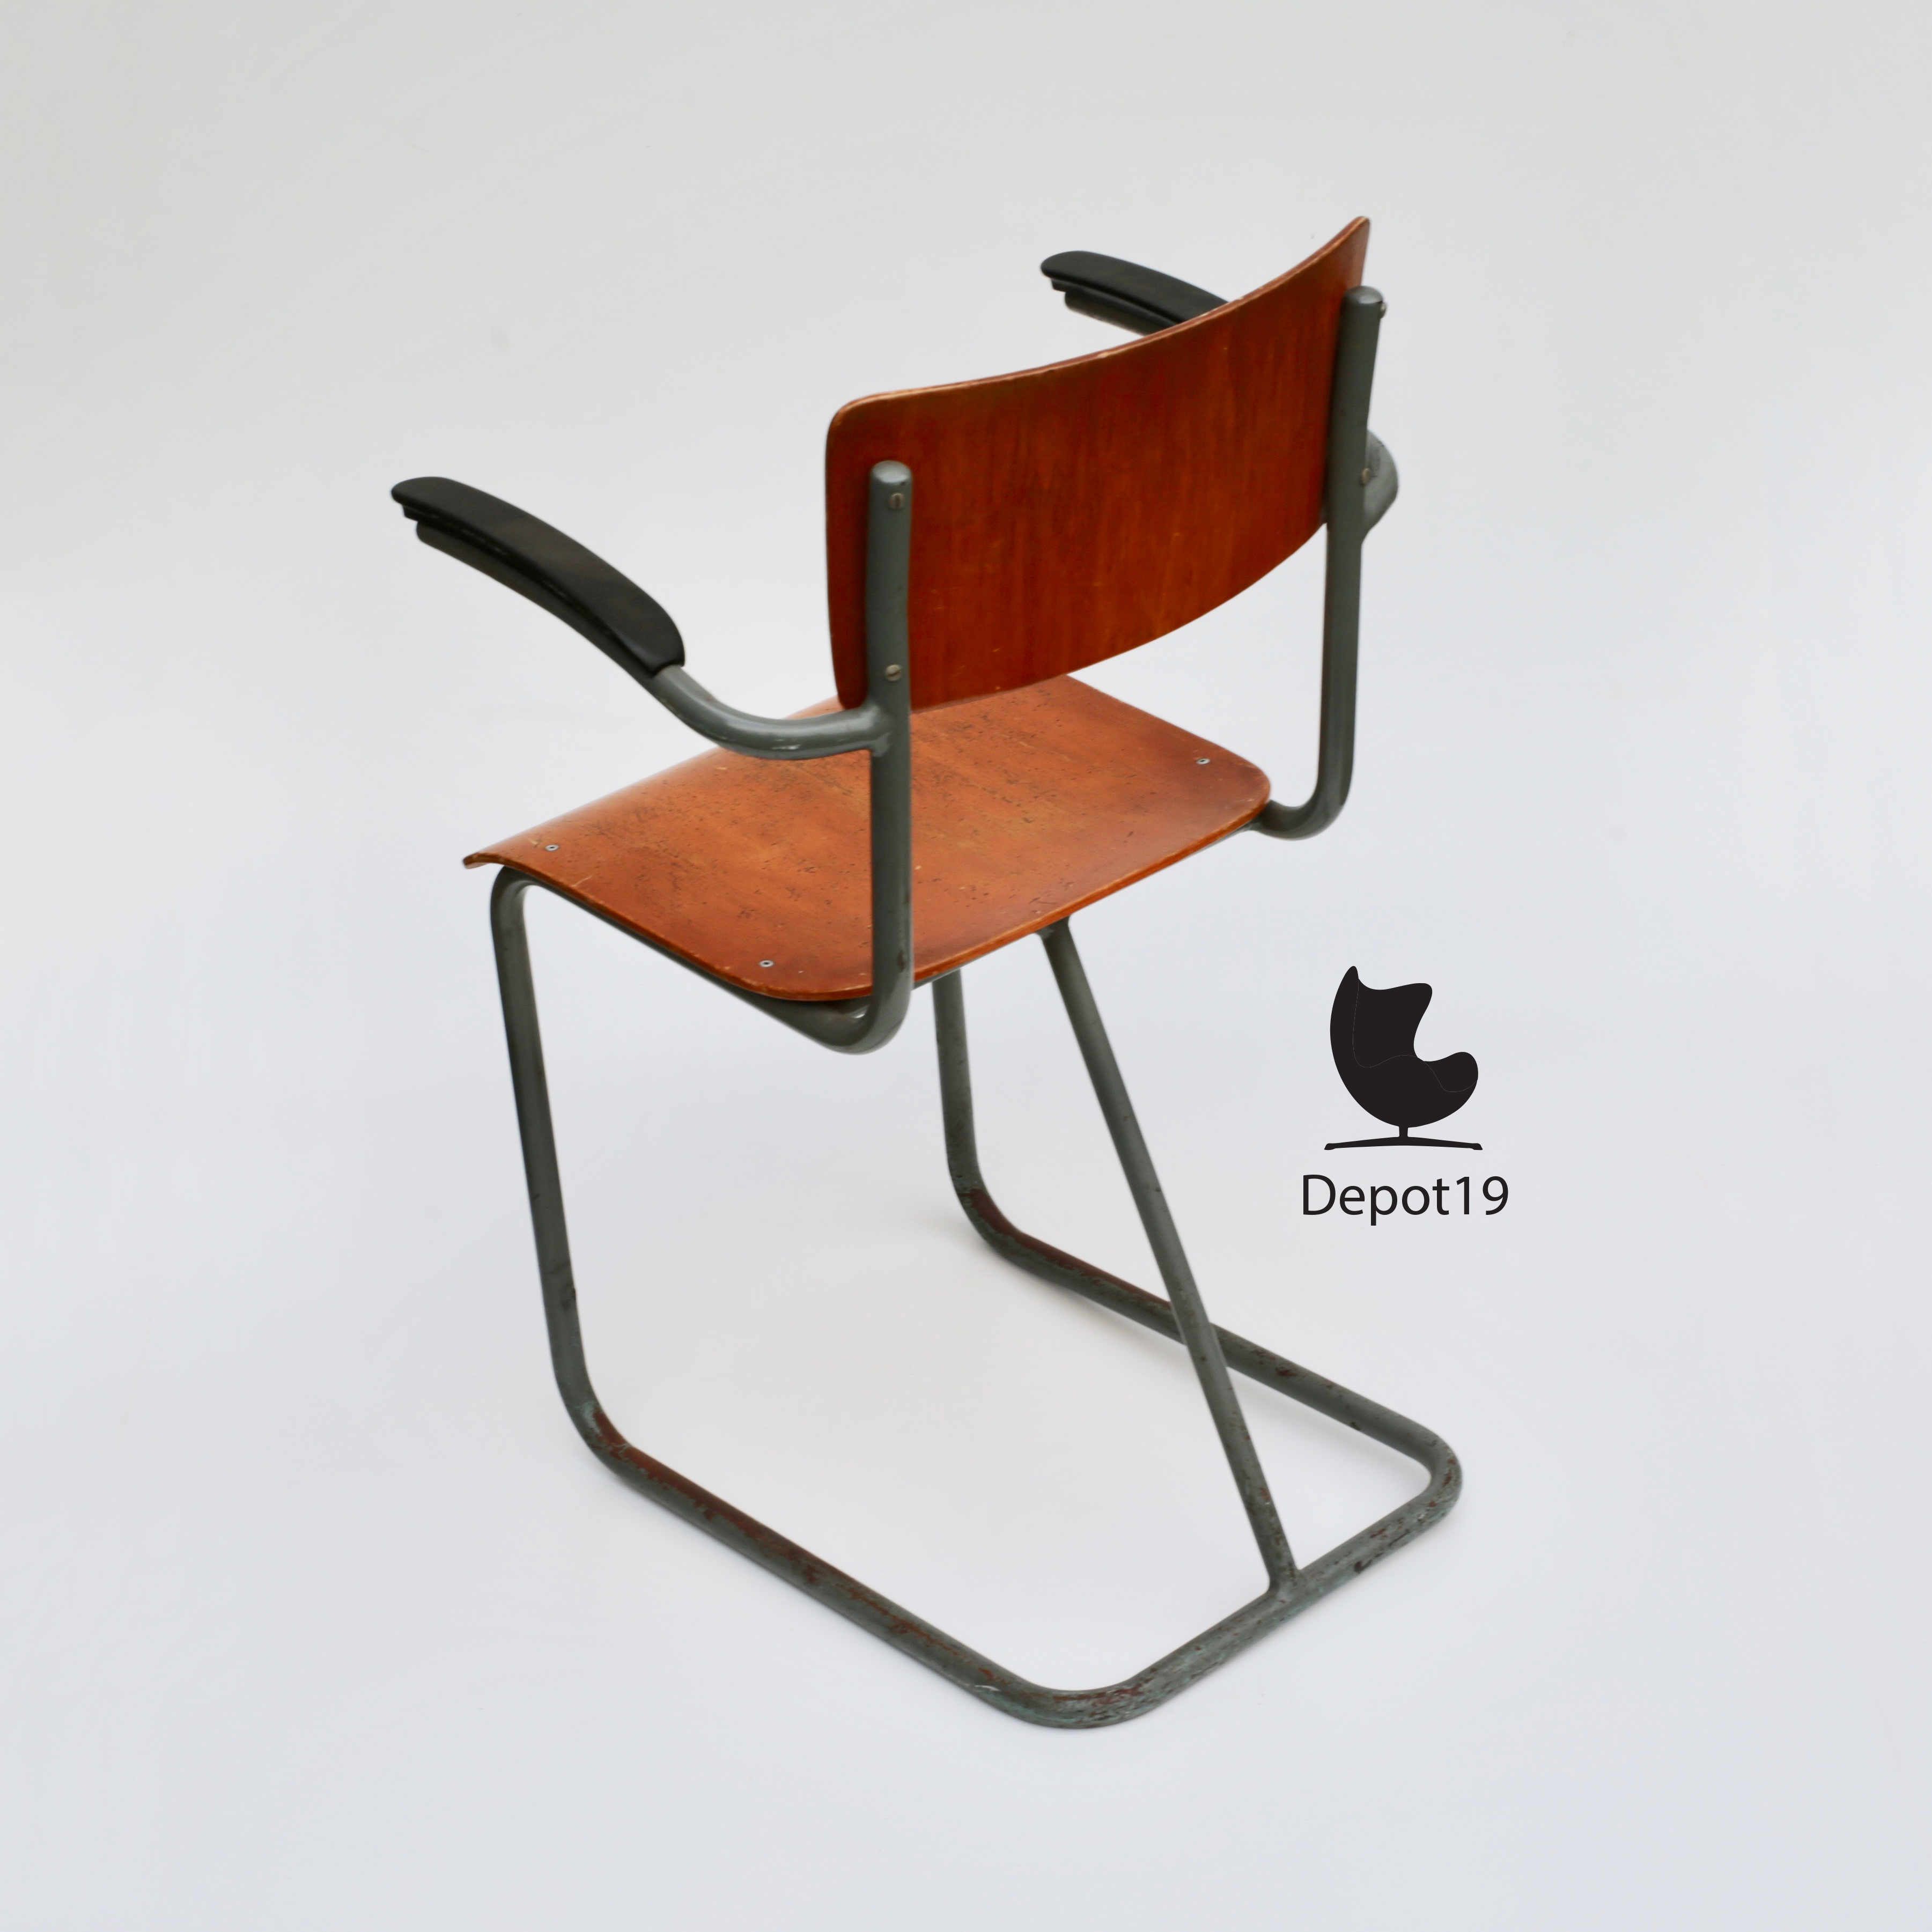 bedelaar ego Gastheer van Gispen buisframe stoel 1940s | Depot 19